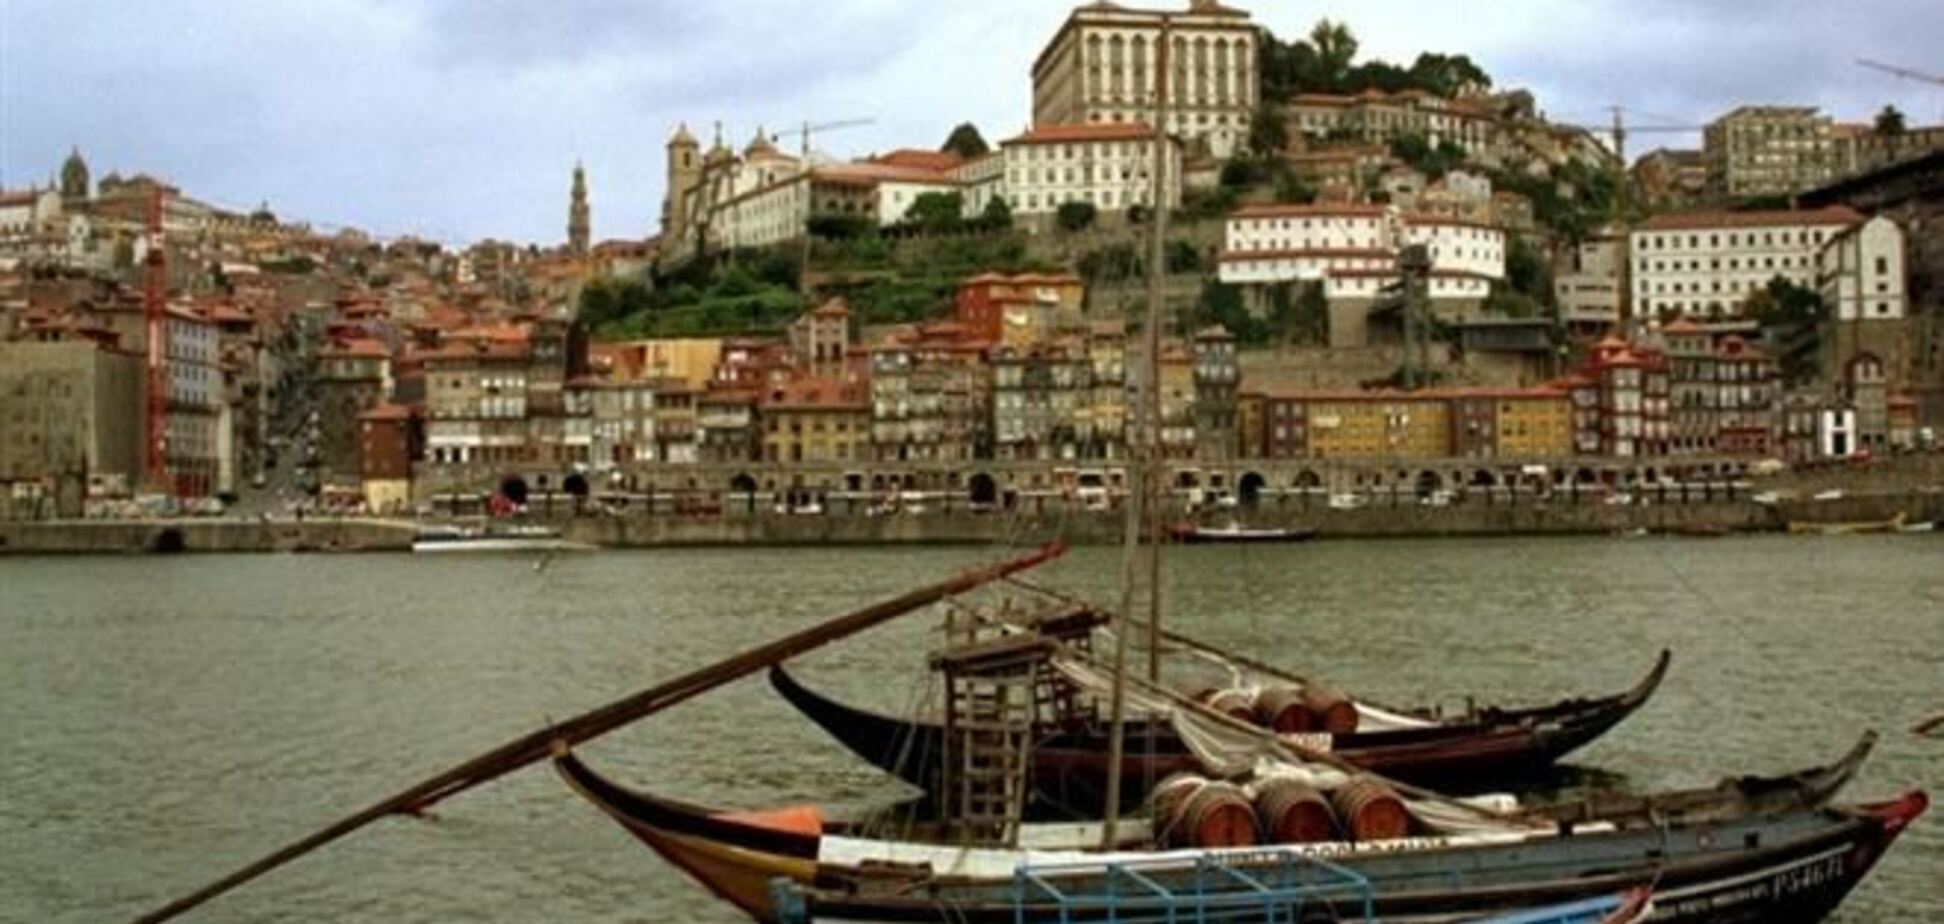 Иностранные инвесторы вложили в недвижимость Португалии €150 млн 